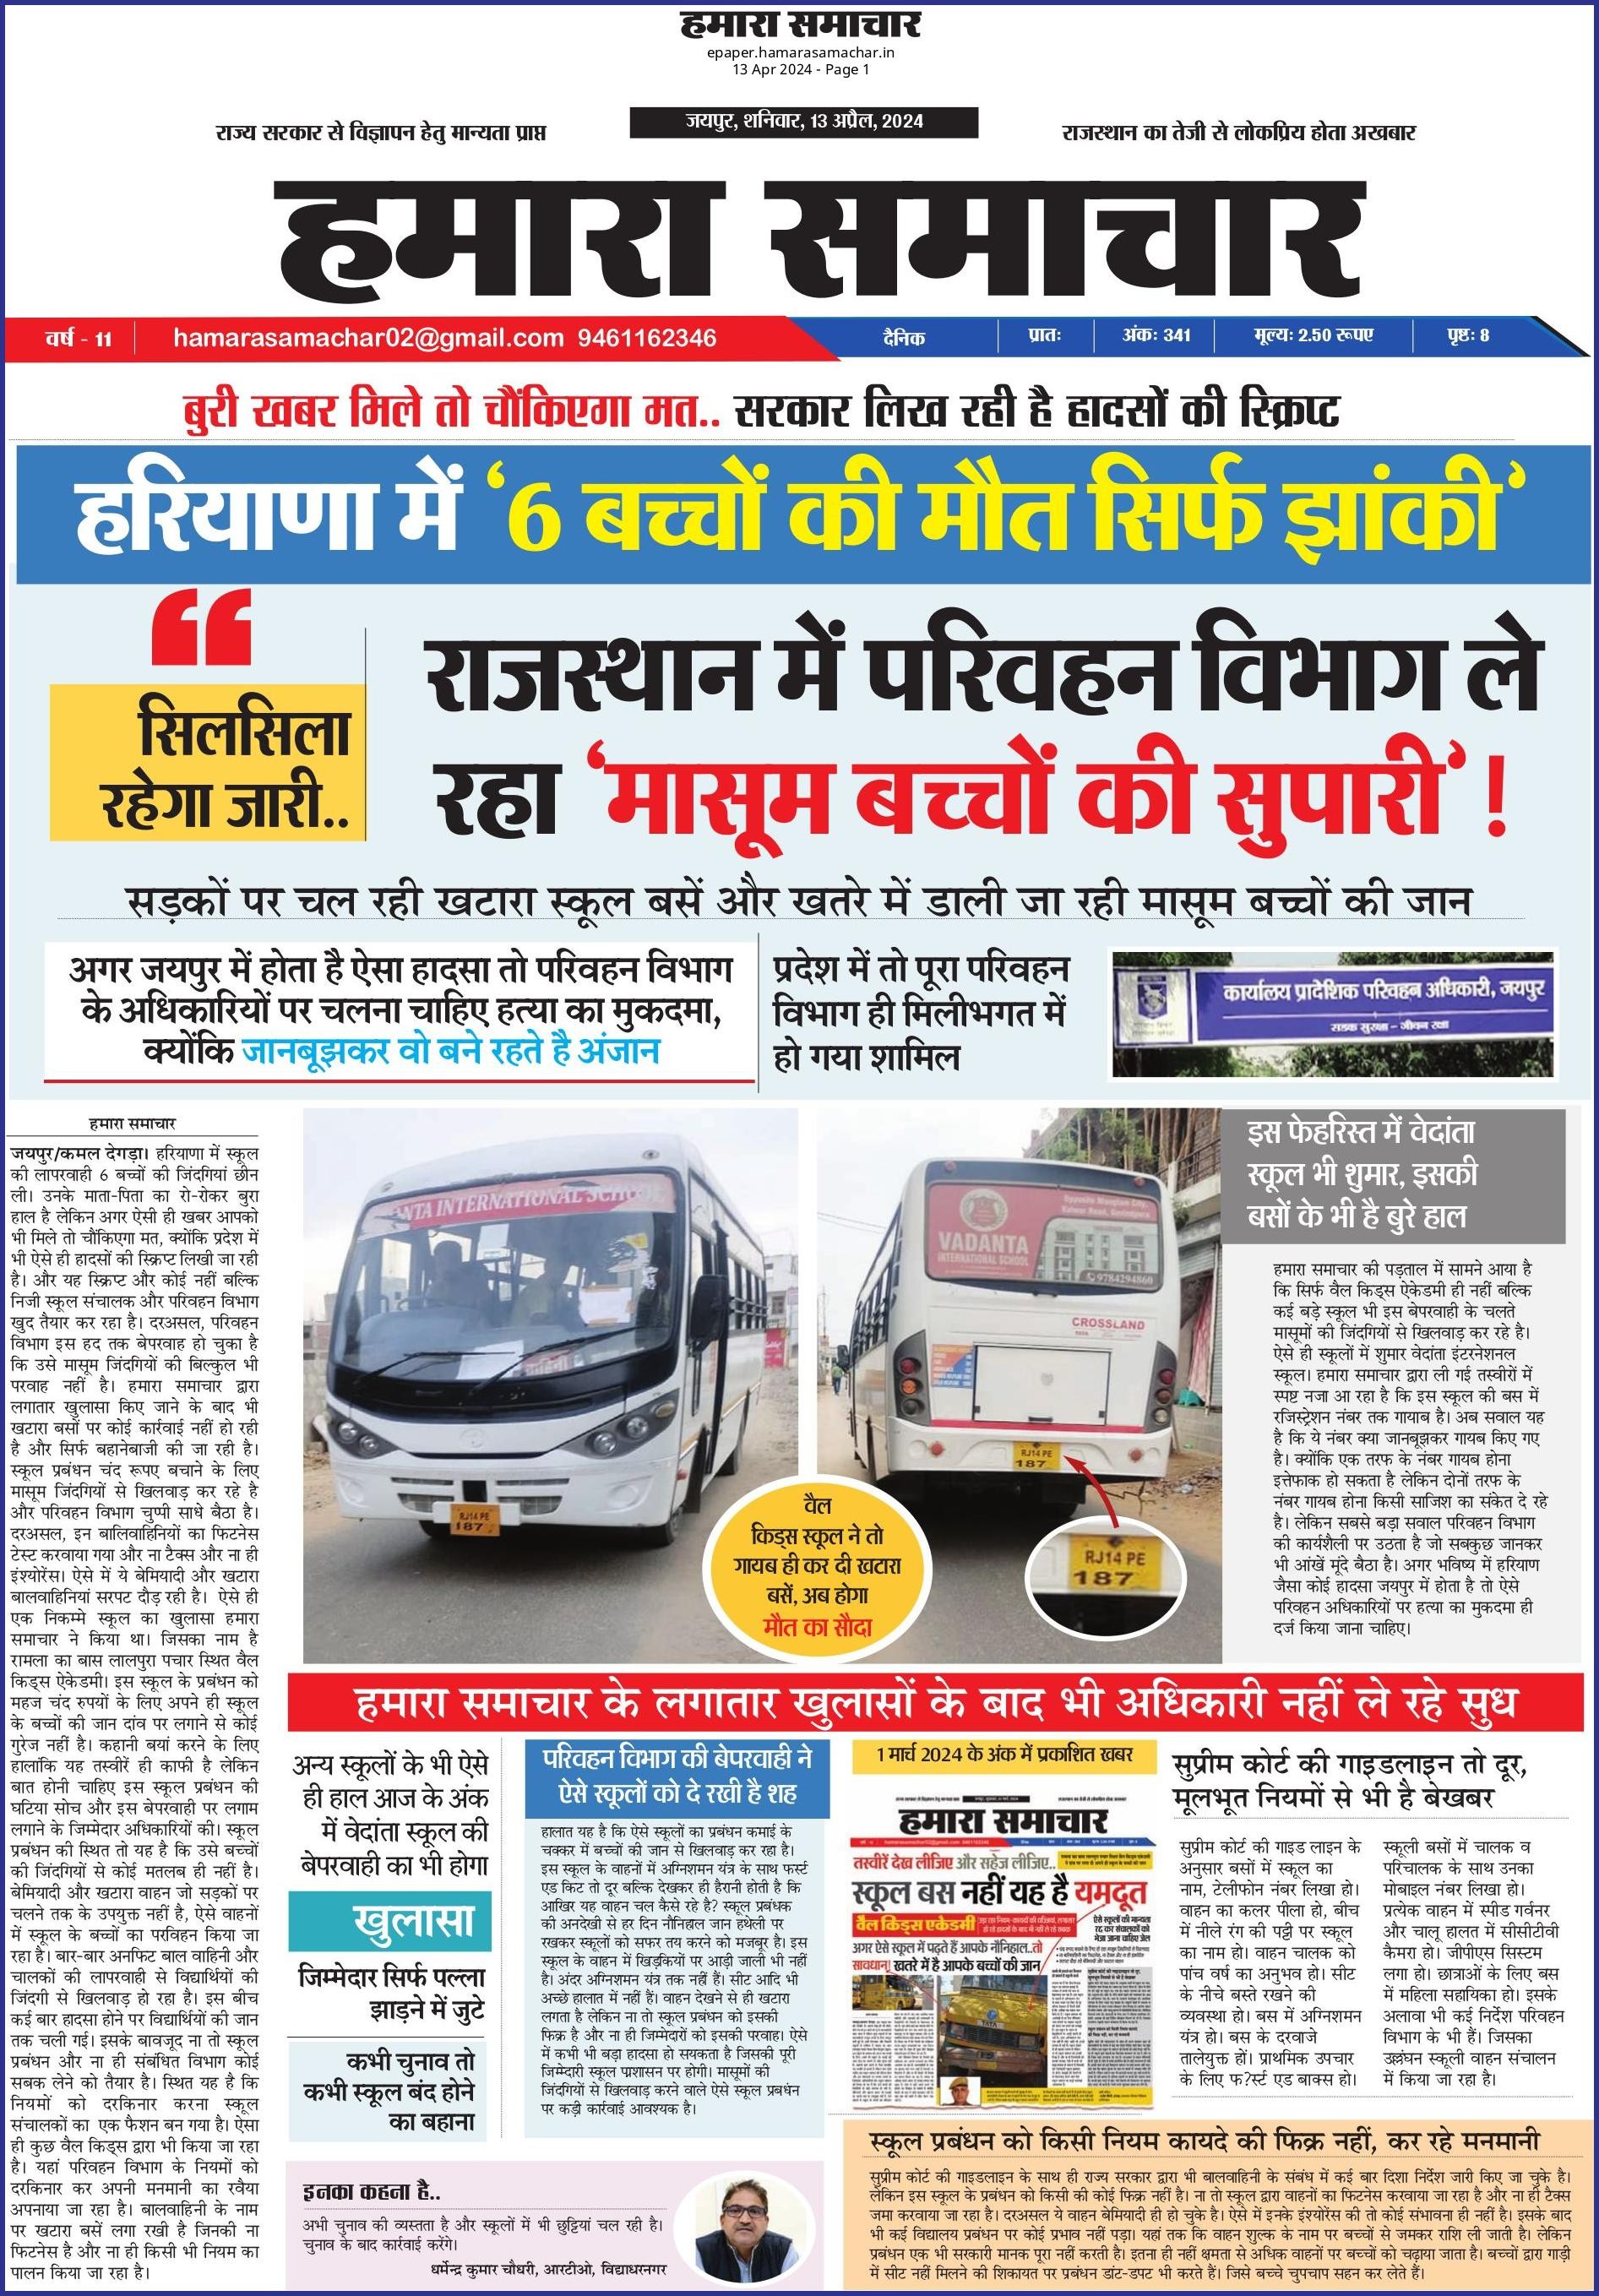 हरियाणा में ‘6 बच्चों की मौत सिर्फ झांकी’, सिलसिला रहेगा जारी..राजस्थान में भी ‘परिवहन विभाग ले रहा ‘मासूम बच्चों की सुपारी’!